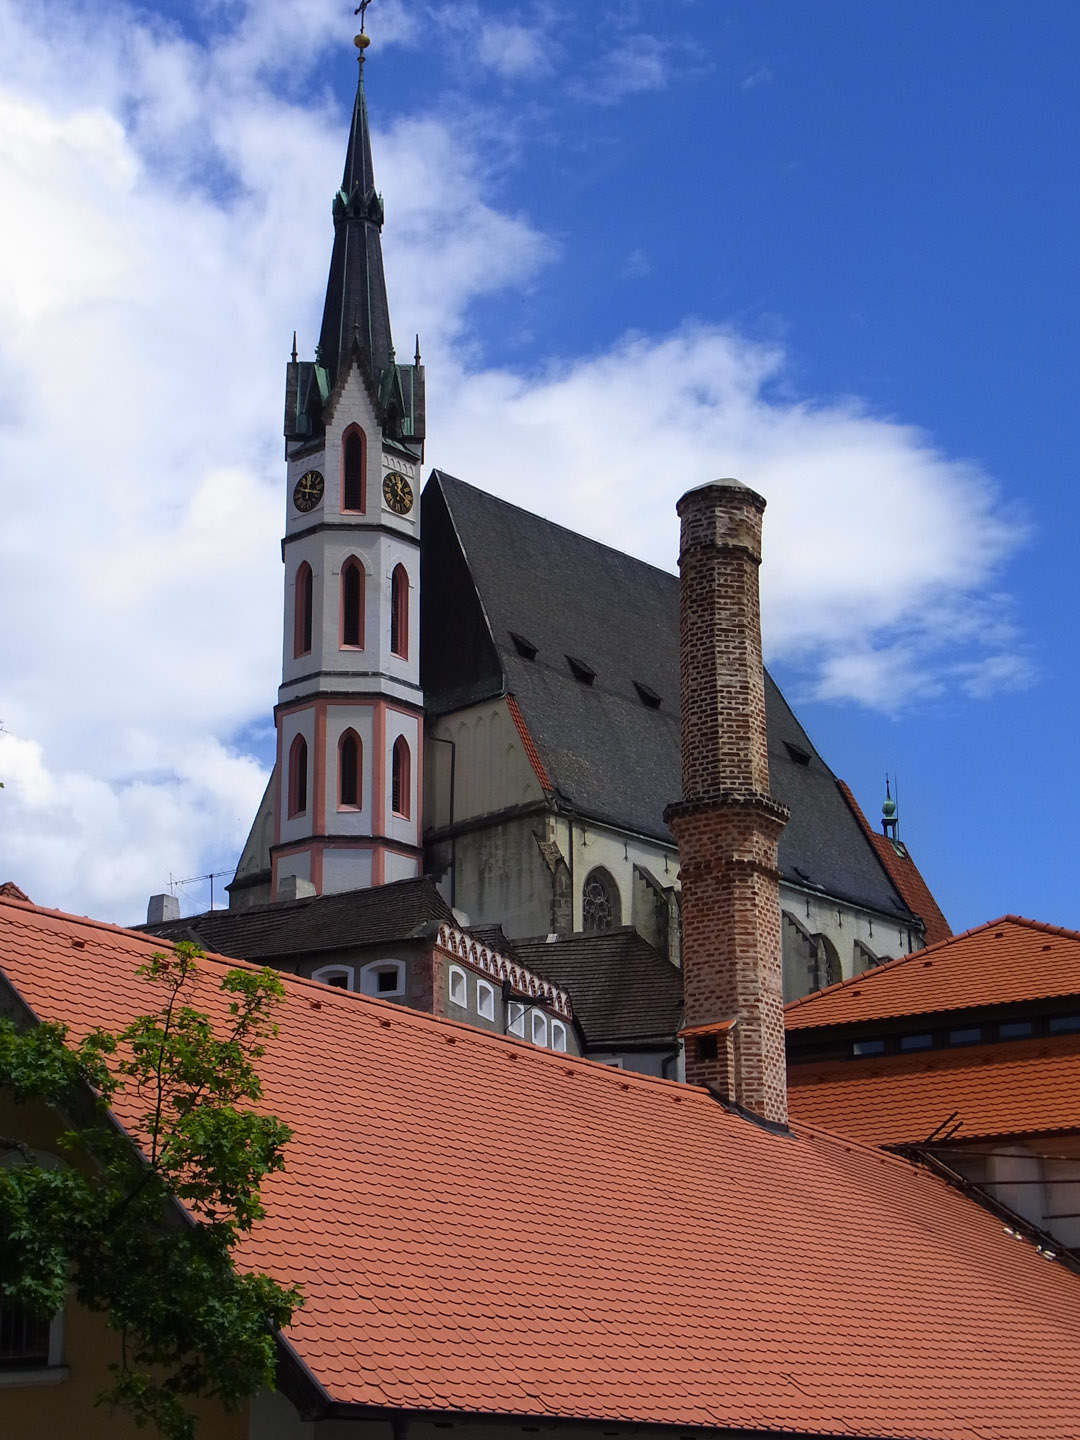 St Vitus Church, Cesky Krumlov